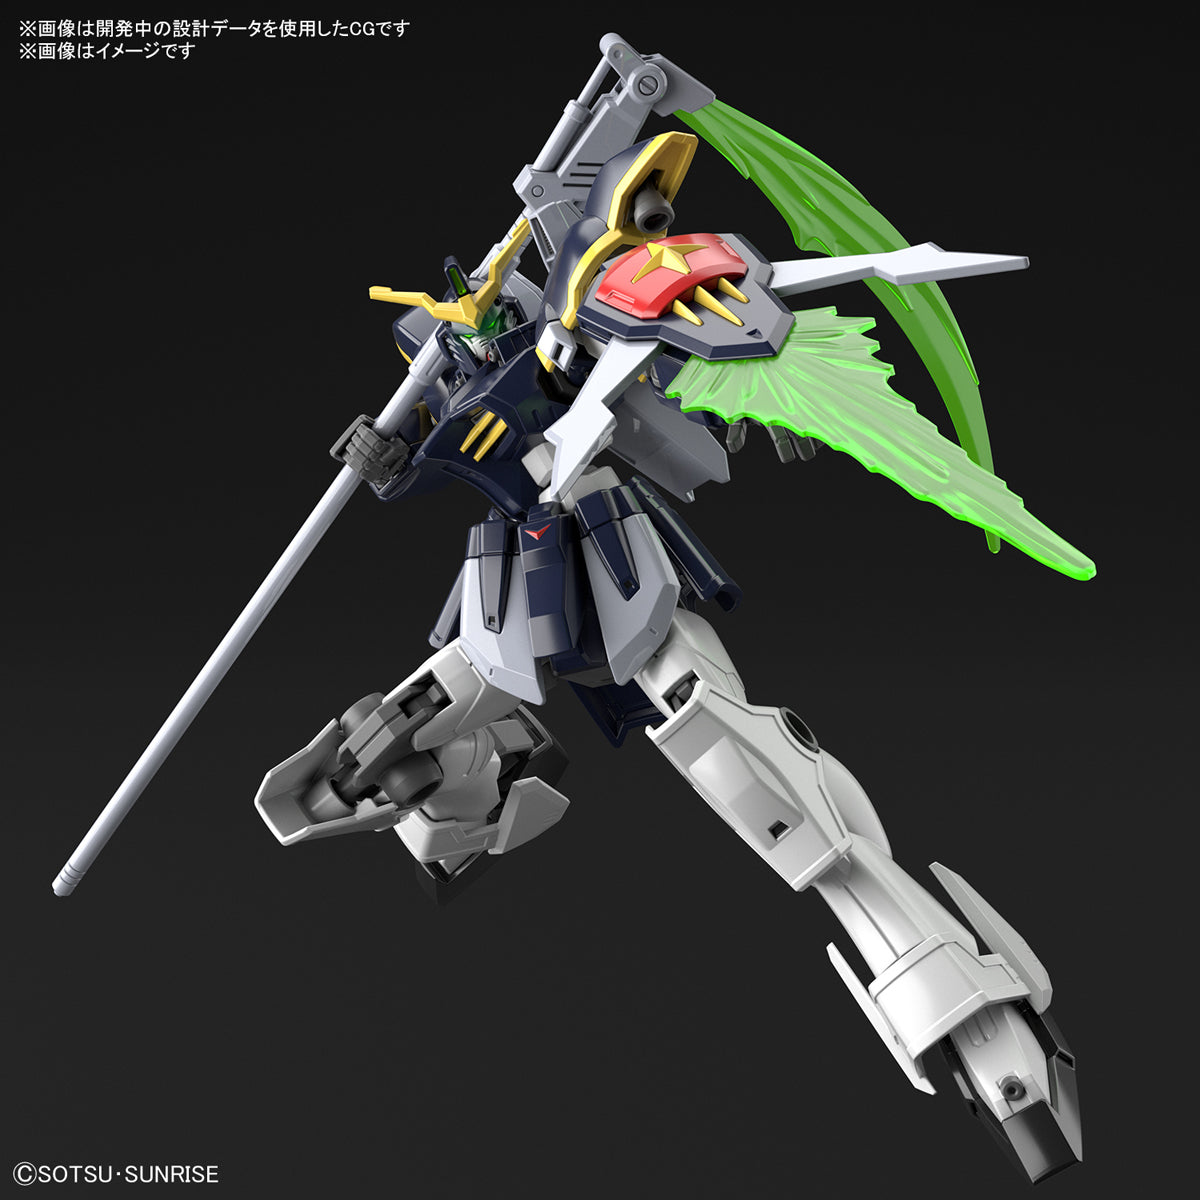 HGAC 1/144 #239 XXXG-01D Gundam Deathscythe #5061654 by Bandai